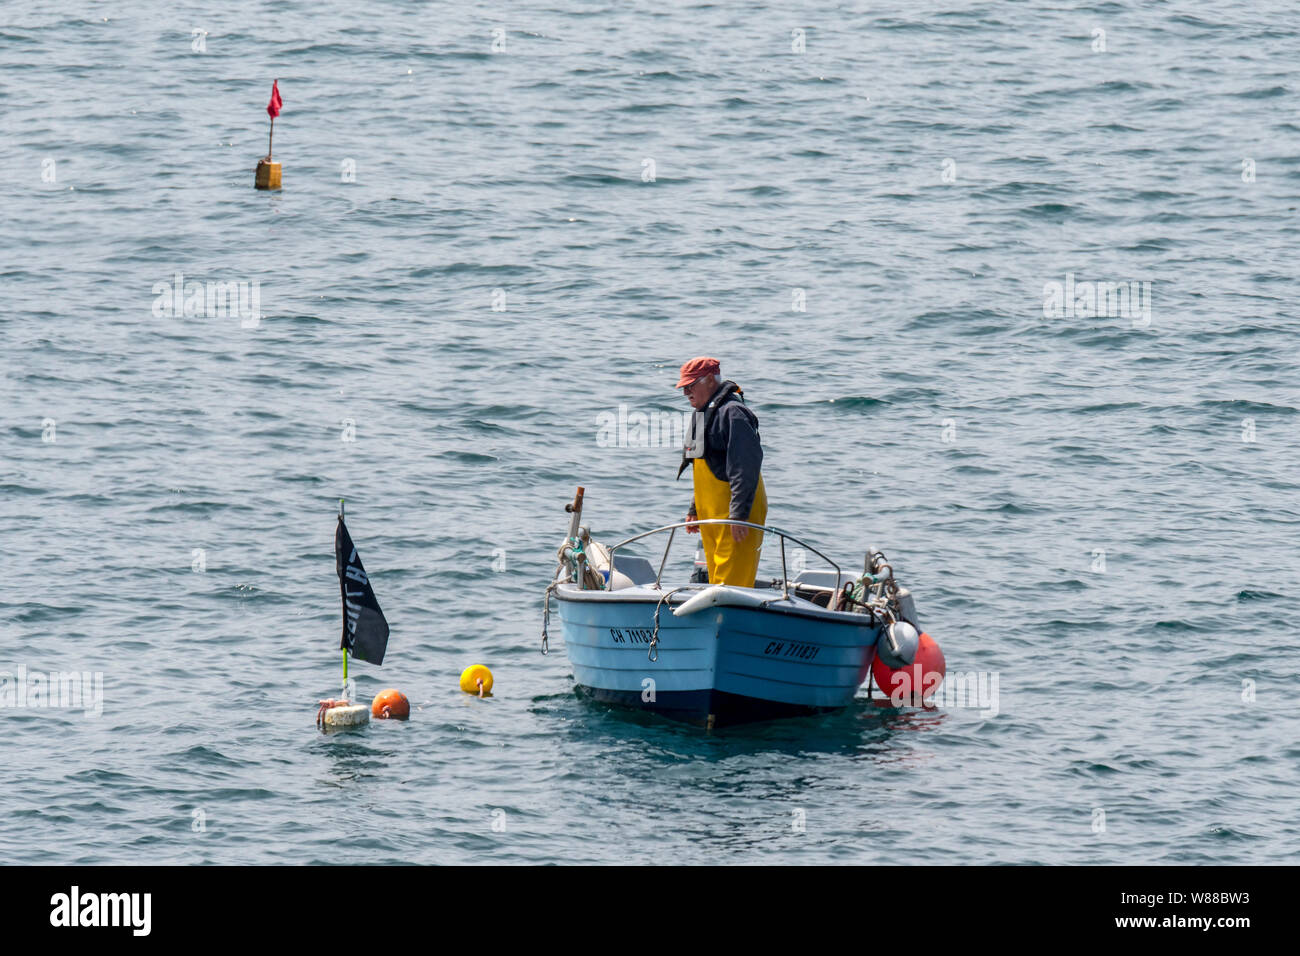 Pescatore in piccola barca da pesca la caduta / tiro trap aragosta / Lobster Pot / aragosta cantre nell'Oceano Atlantico / Canale Inglese Foto Stock